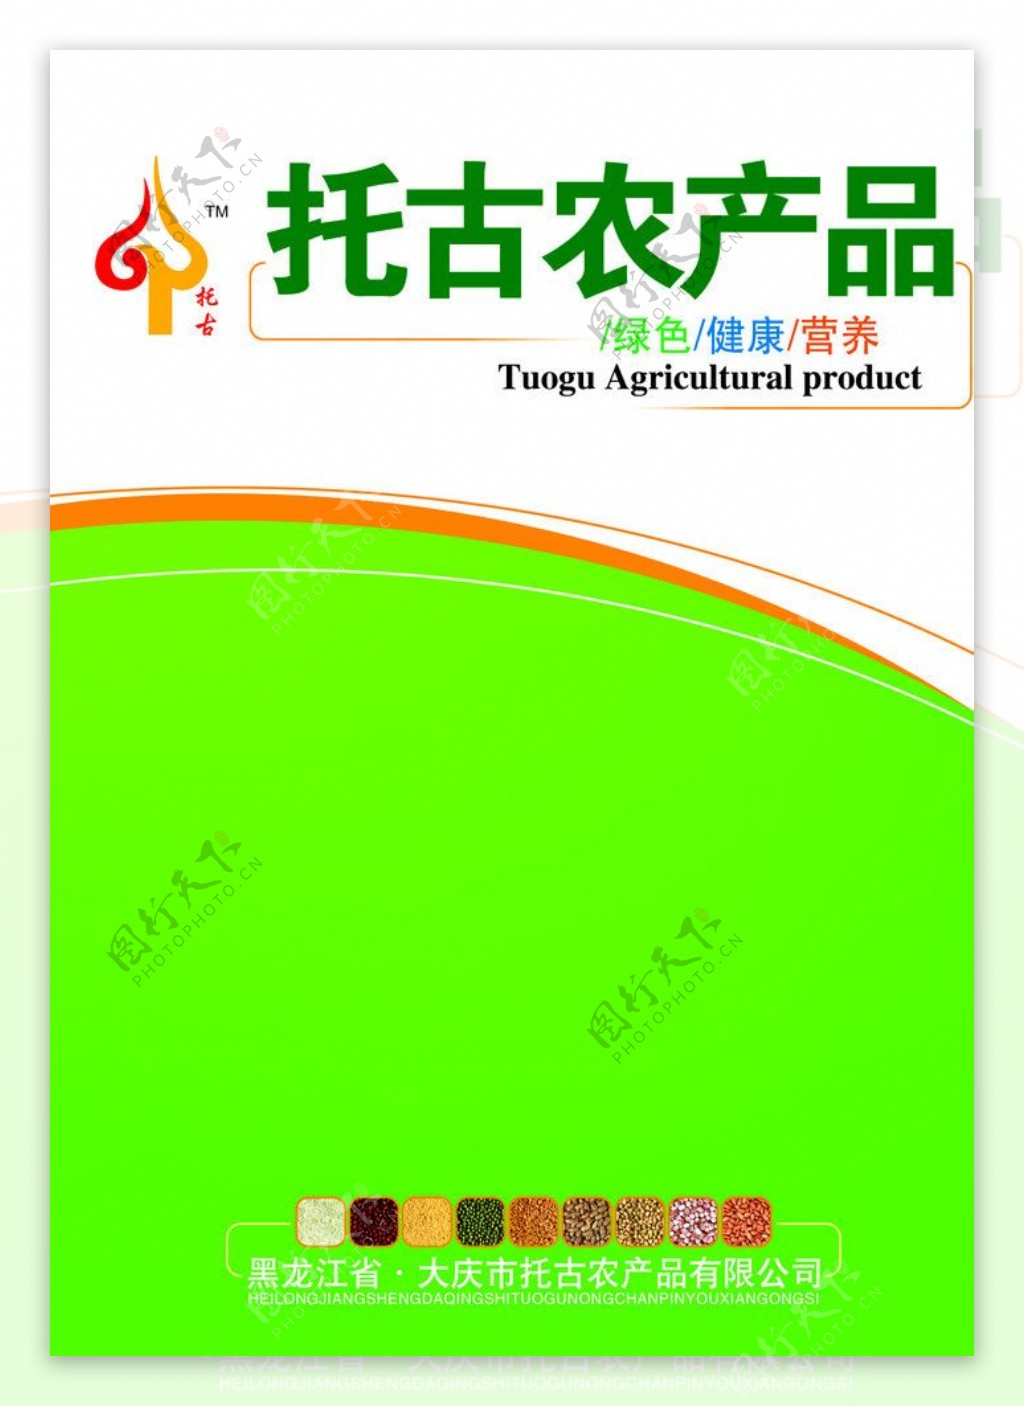 农产品宣传画册图片